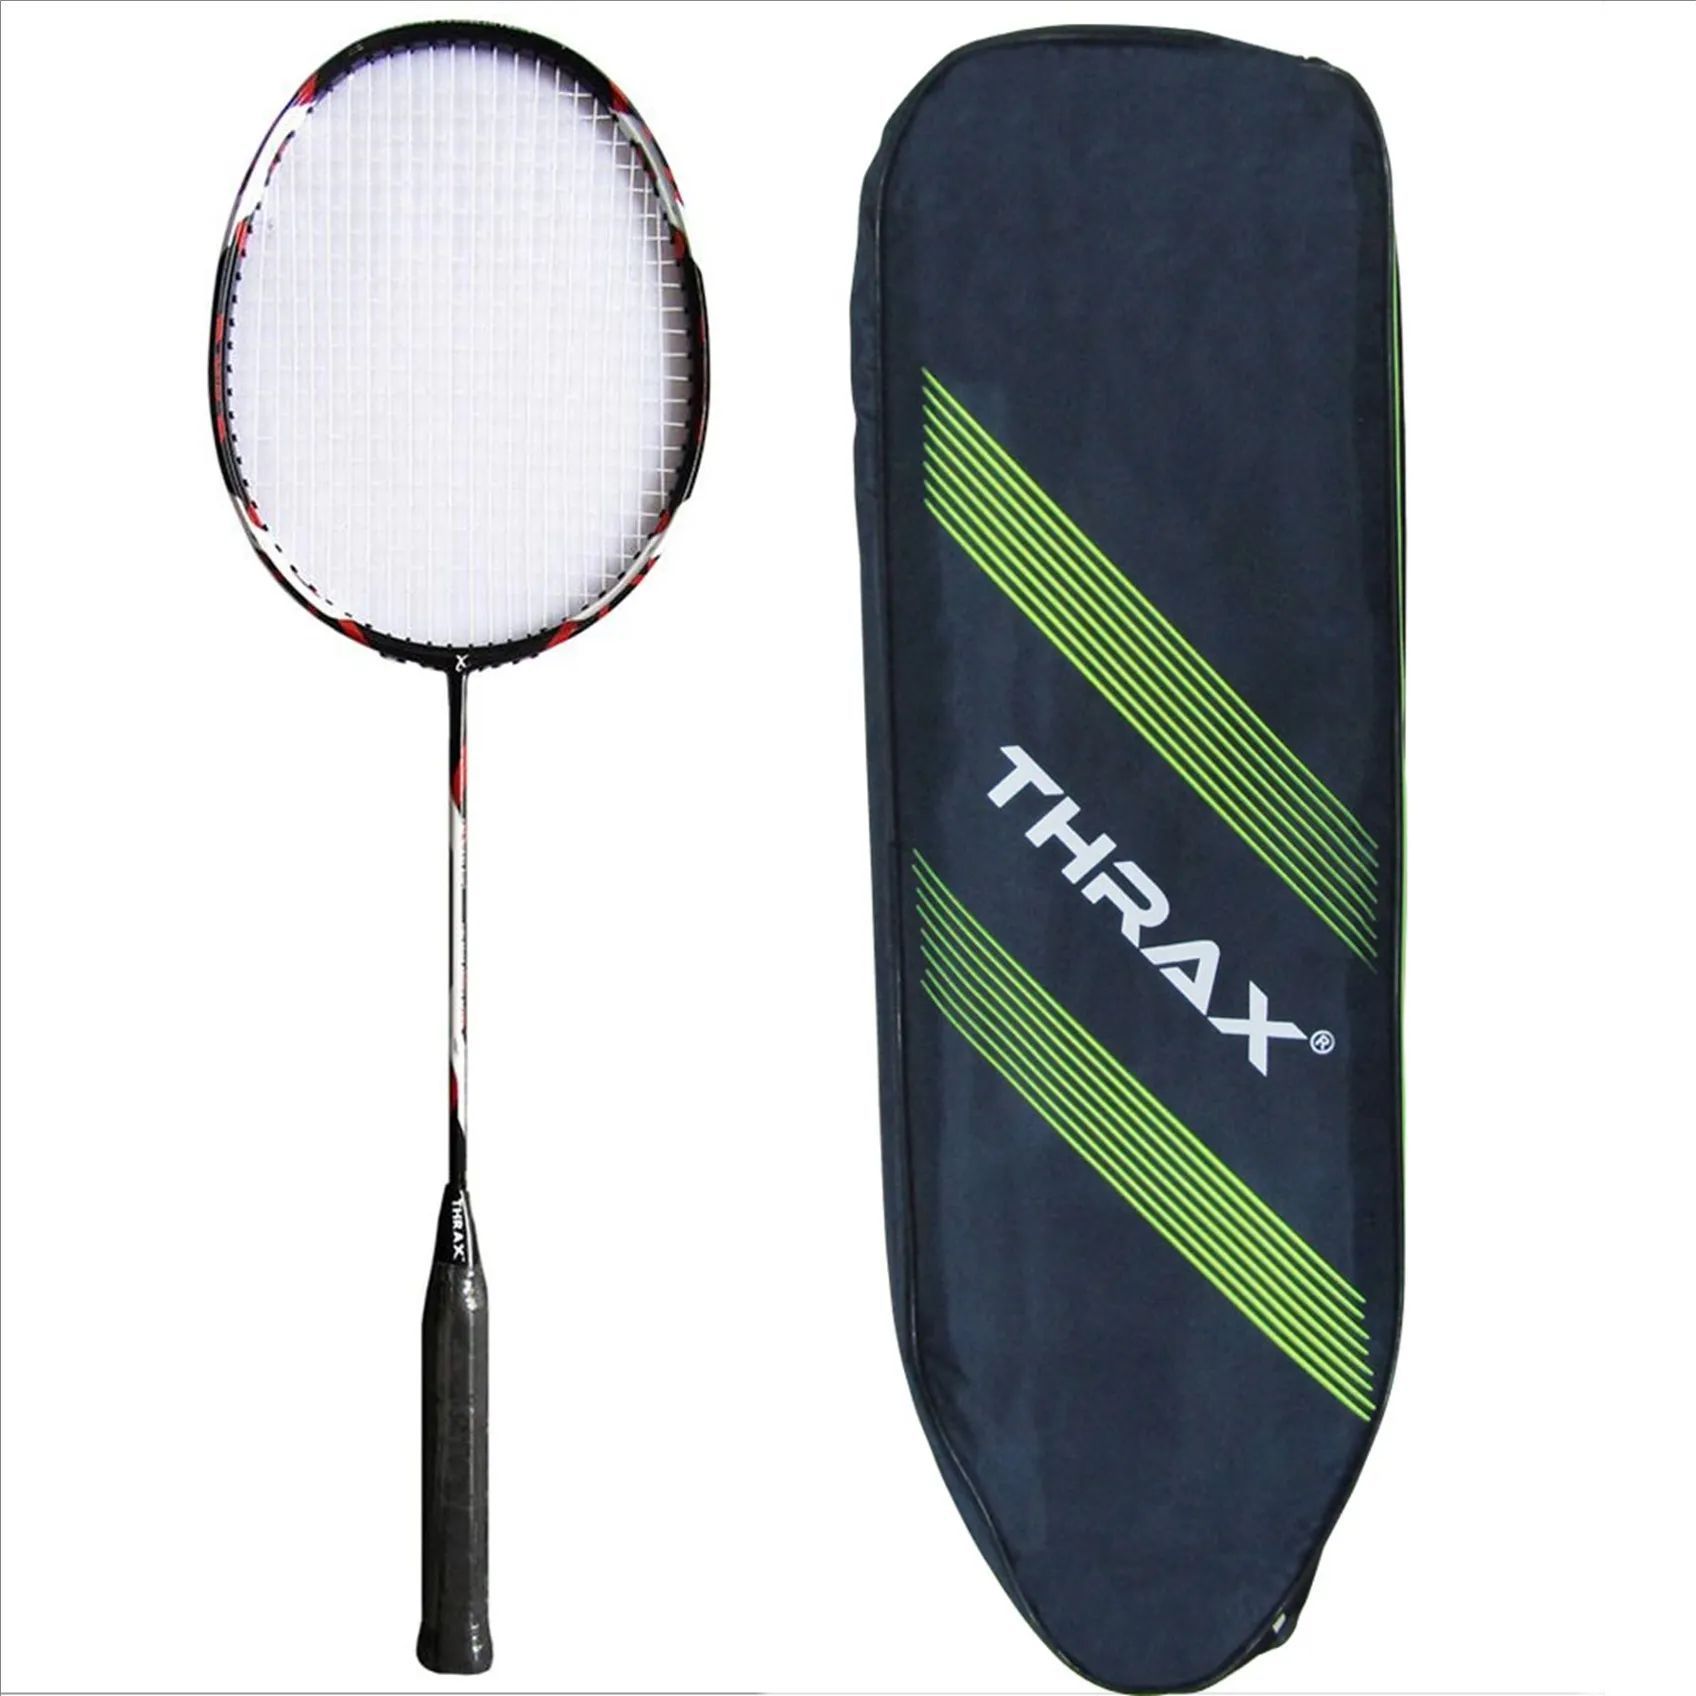 Thrax Mega Power 29 Badminton Racket,- Buy Thrax Mega Power 29 Badminton Racket Online at Lowest Prices in India